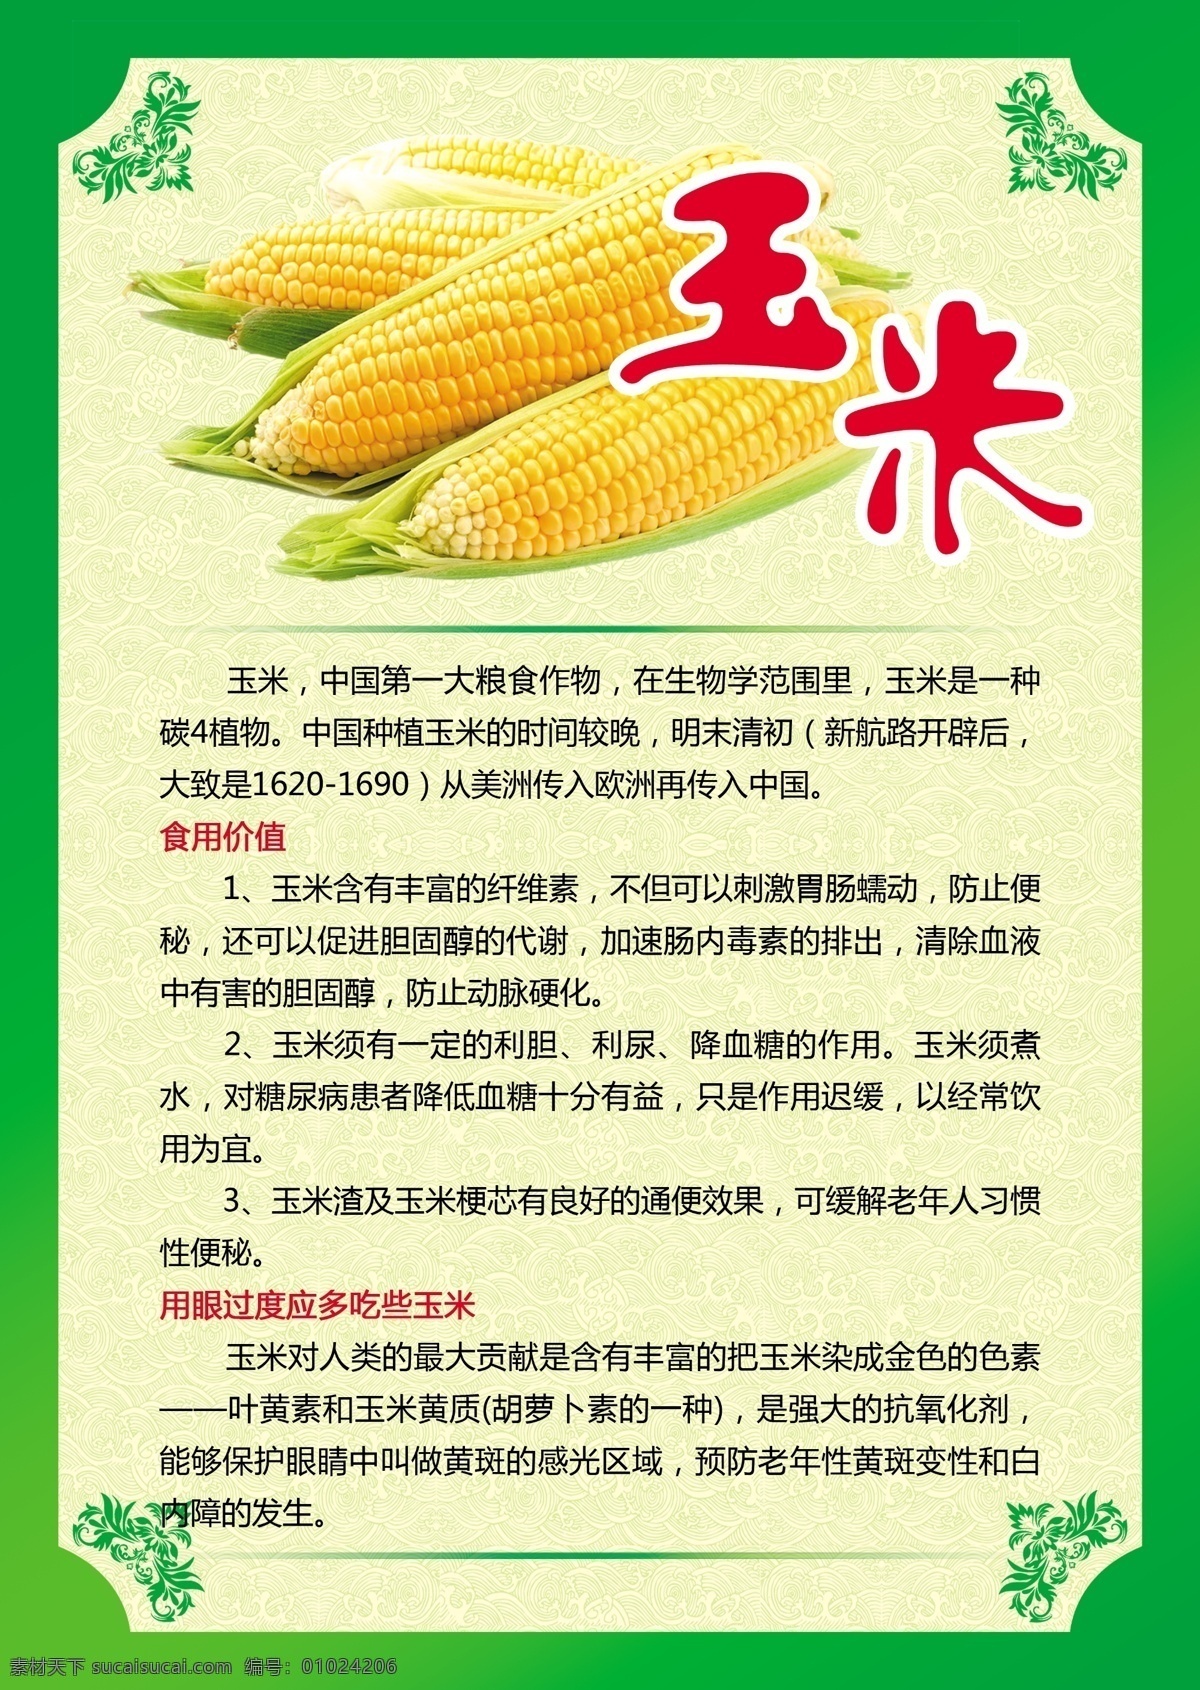 玉米 玉米海报 绿色背景 蔬菜介绍 蔬菜简介 绿色花边 蔬菜背景 新鲜蔬菜 营养价值 营养 蔬菜 海报